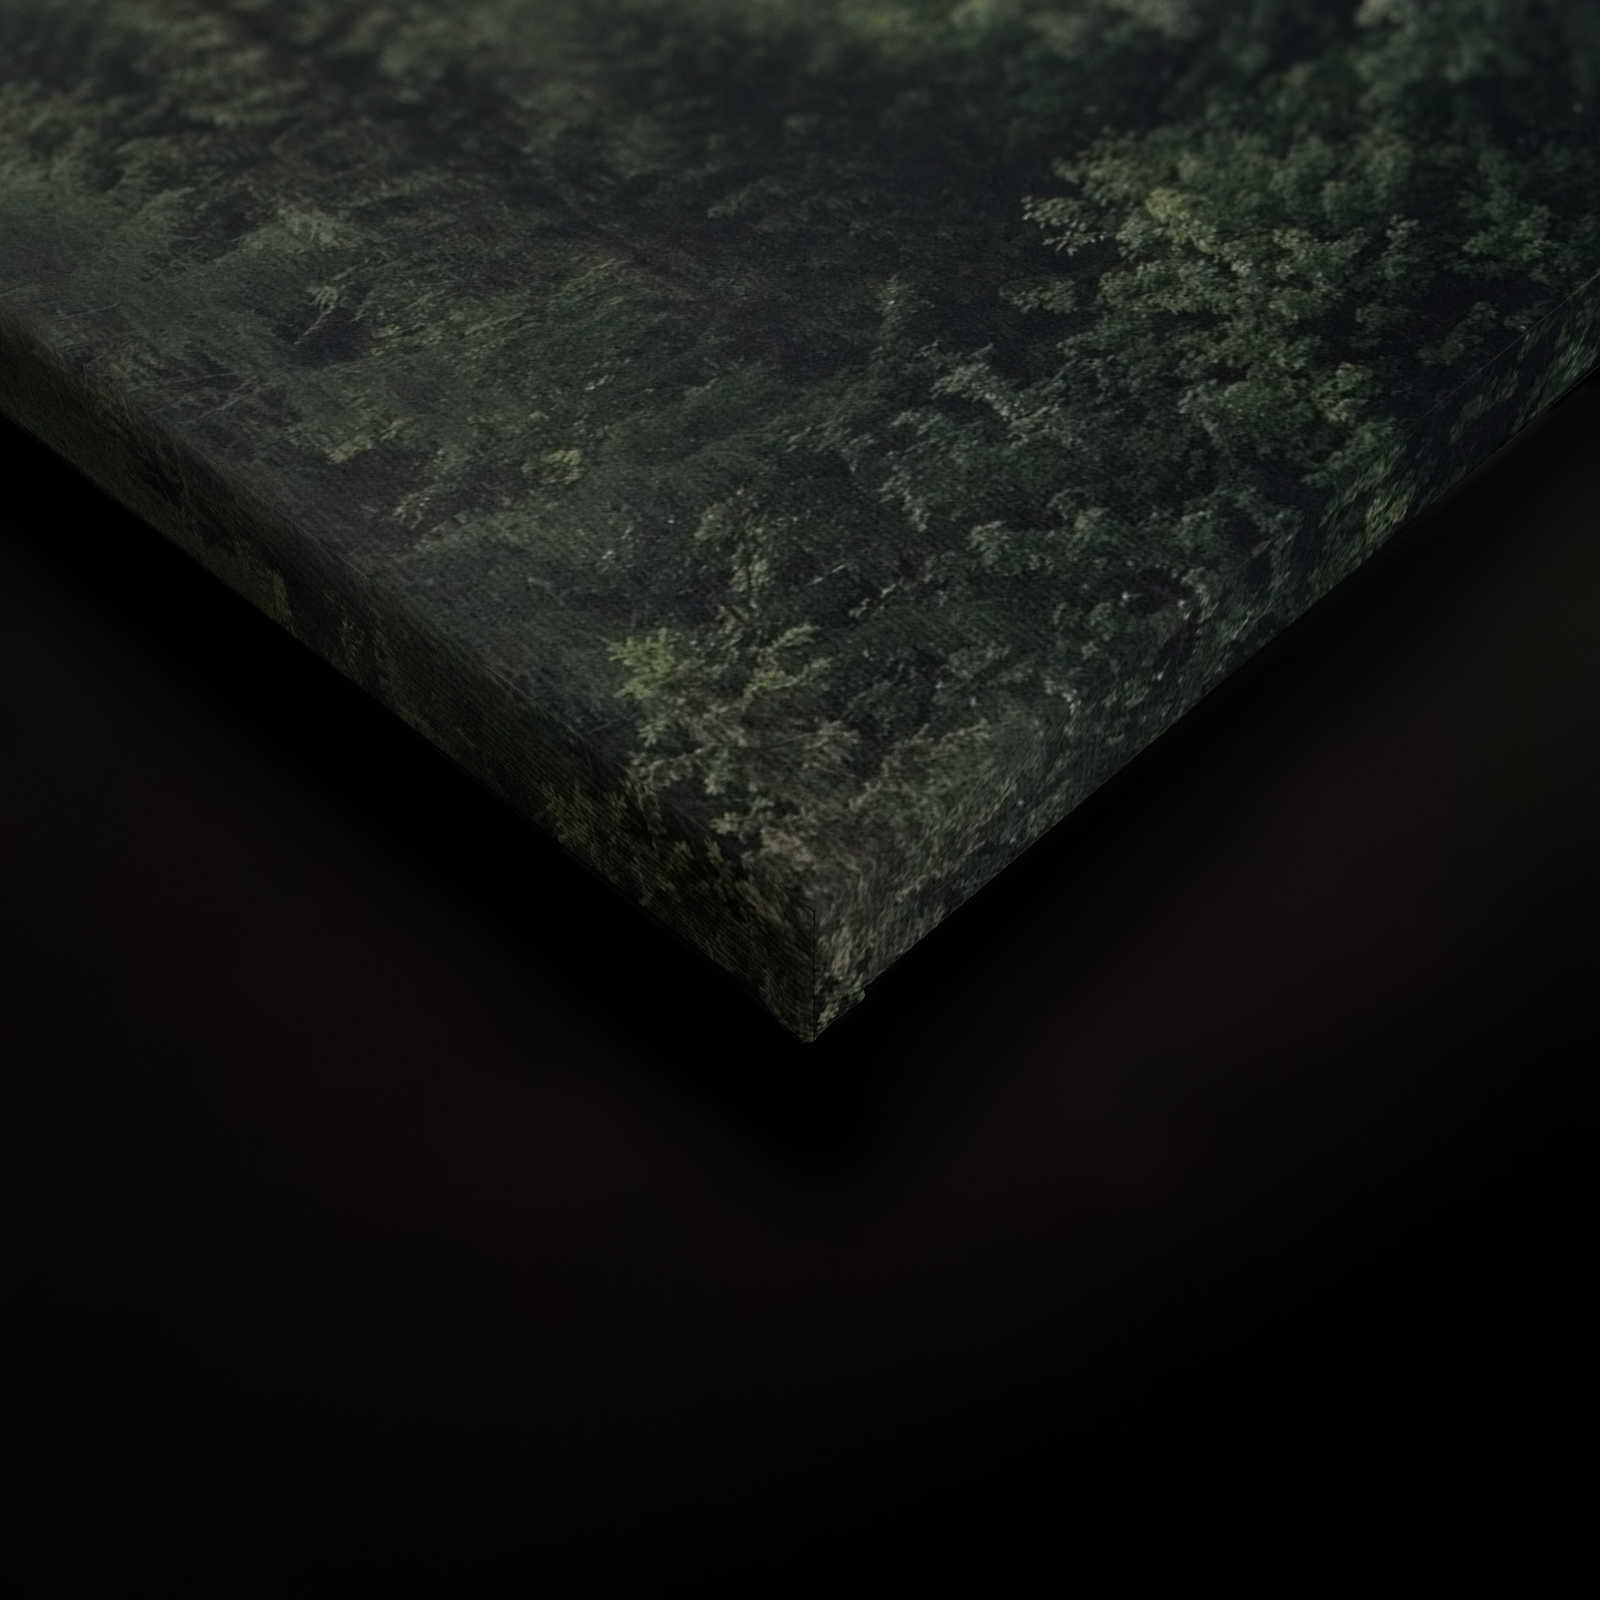             Leinwand mit Wald von oben an einem nebeligen Tag – 0,90 m x 0,60 m
        